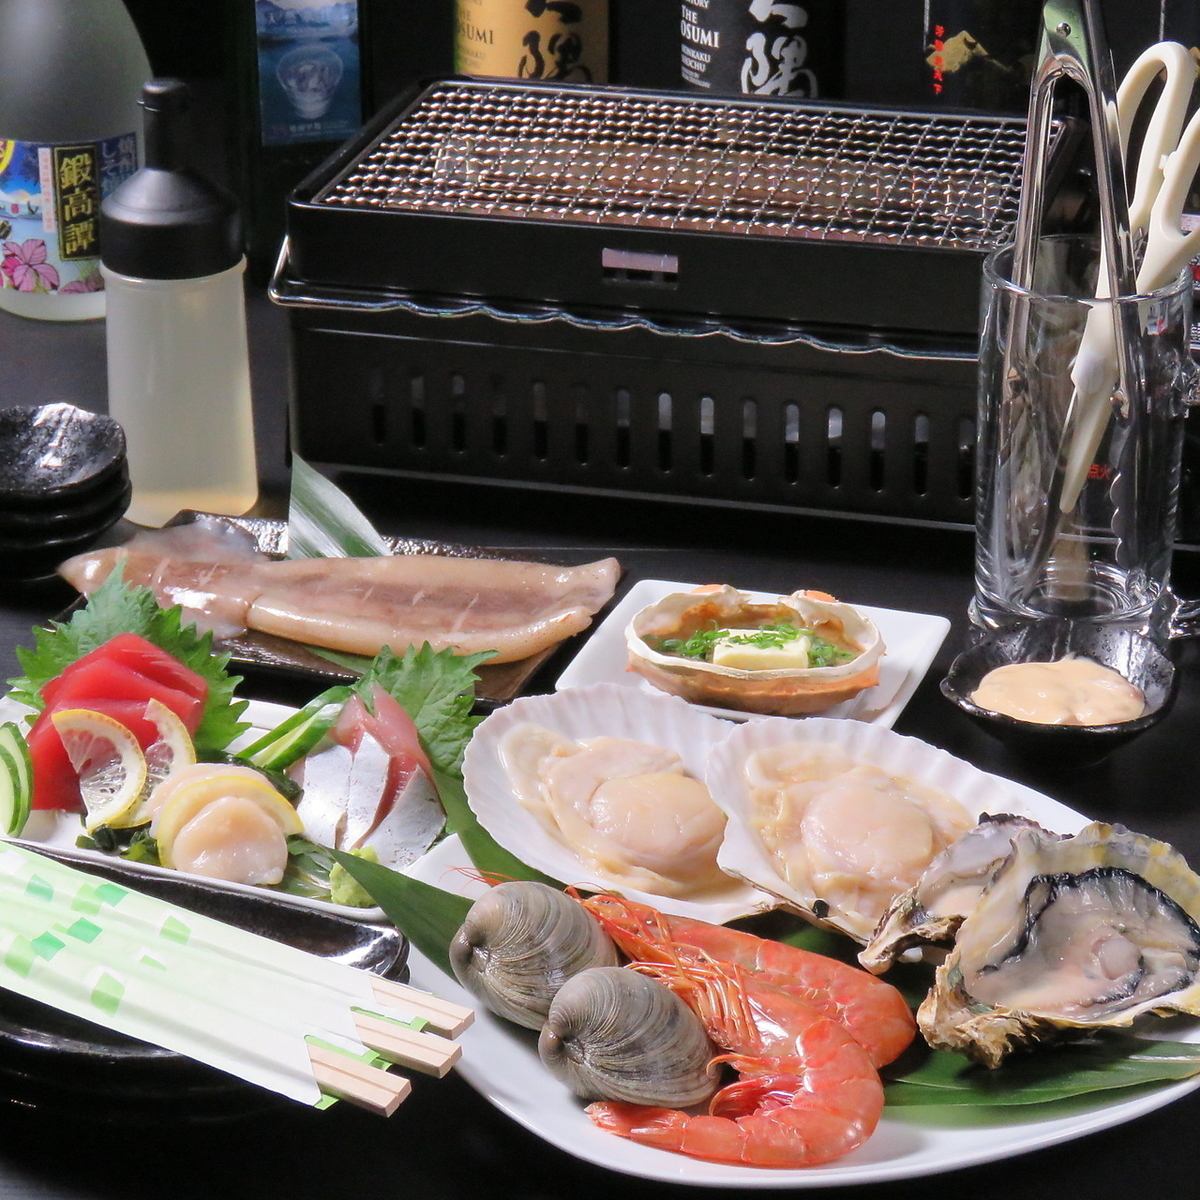 【日野駅より徒歩5分】旬の産地直送新鮮魚介が楽しめます♪ネット予約受付中